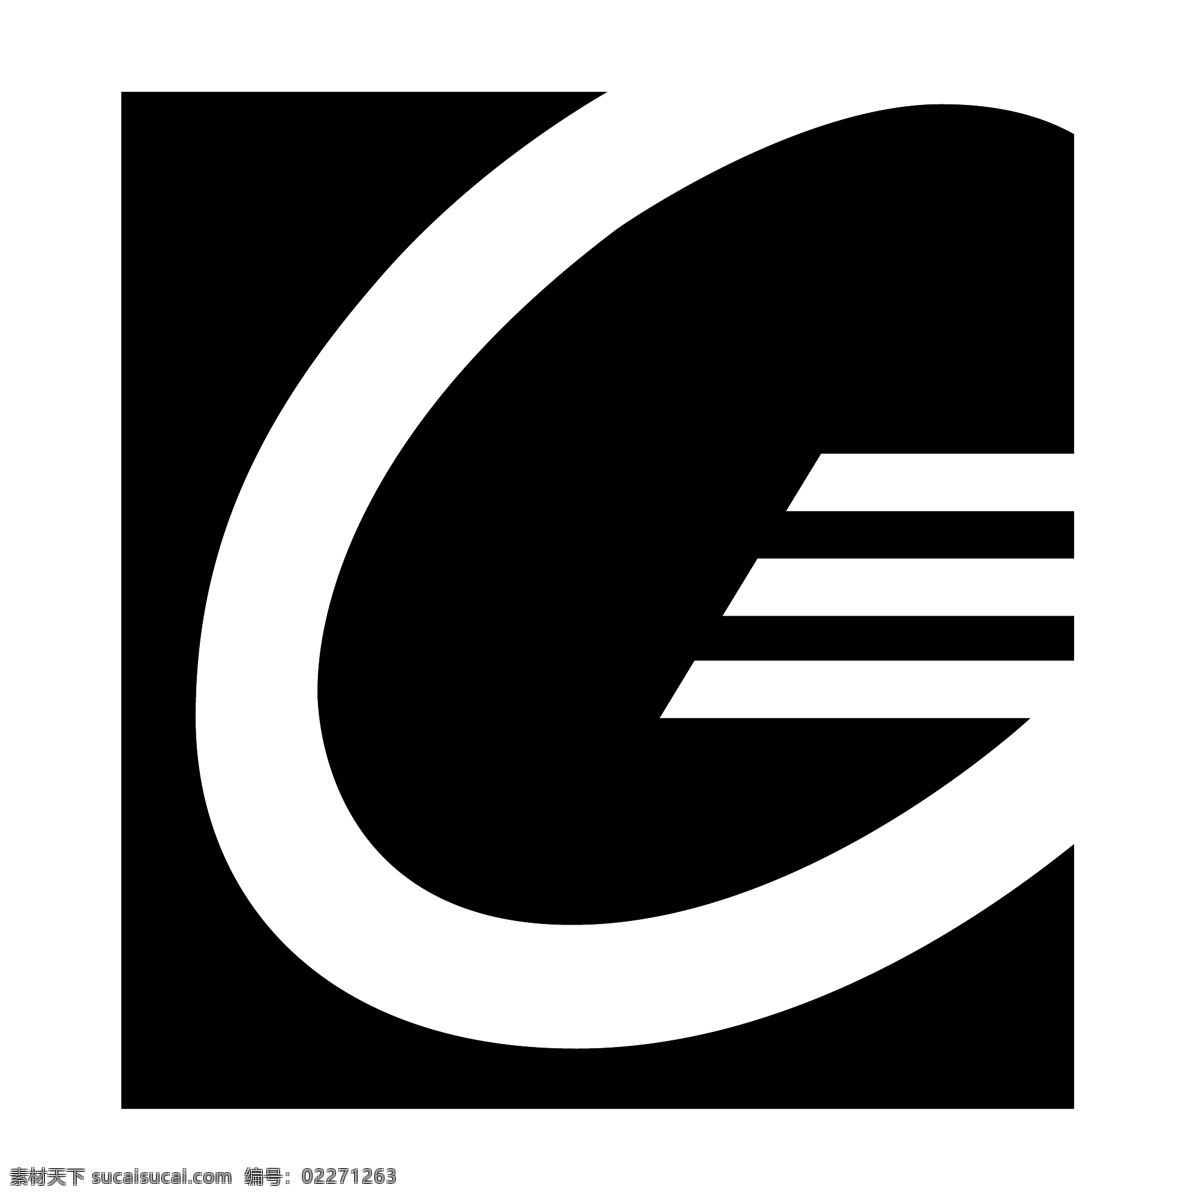 吉列2 标识 吉列 向量 矢量 标志 图标 官方赞助商 建筑家居